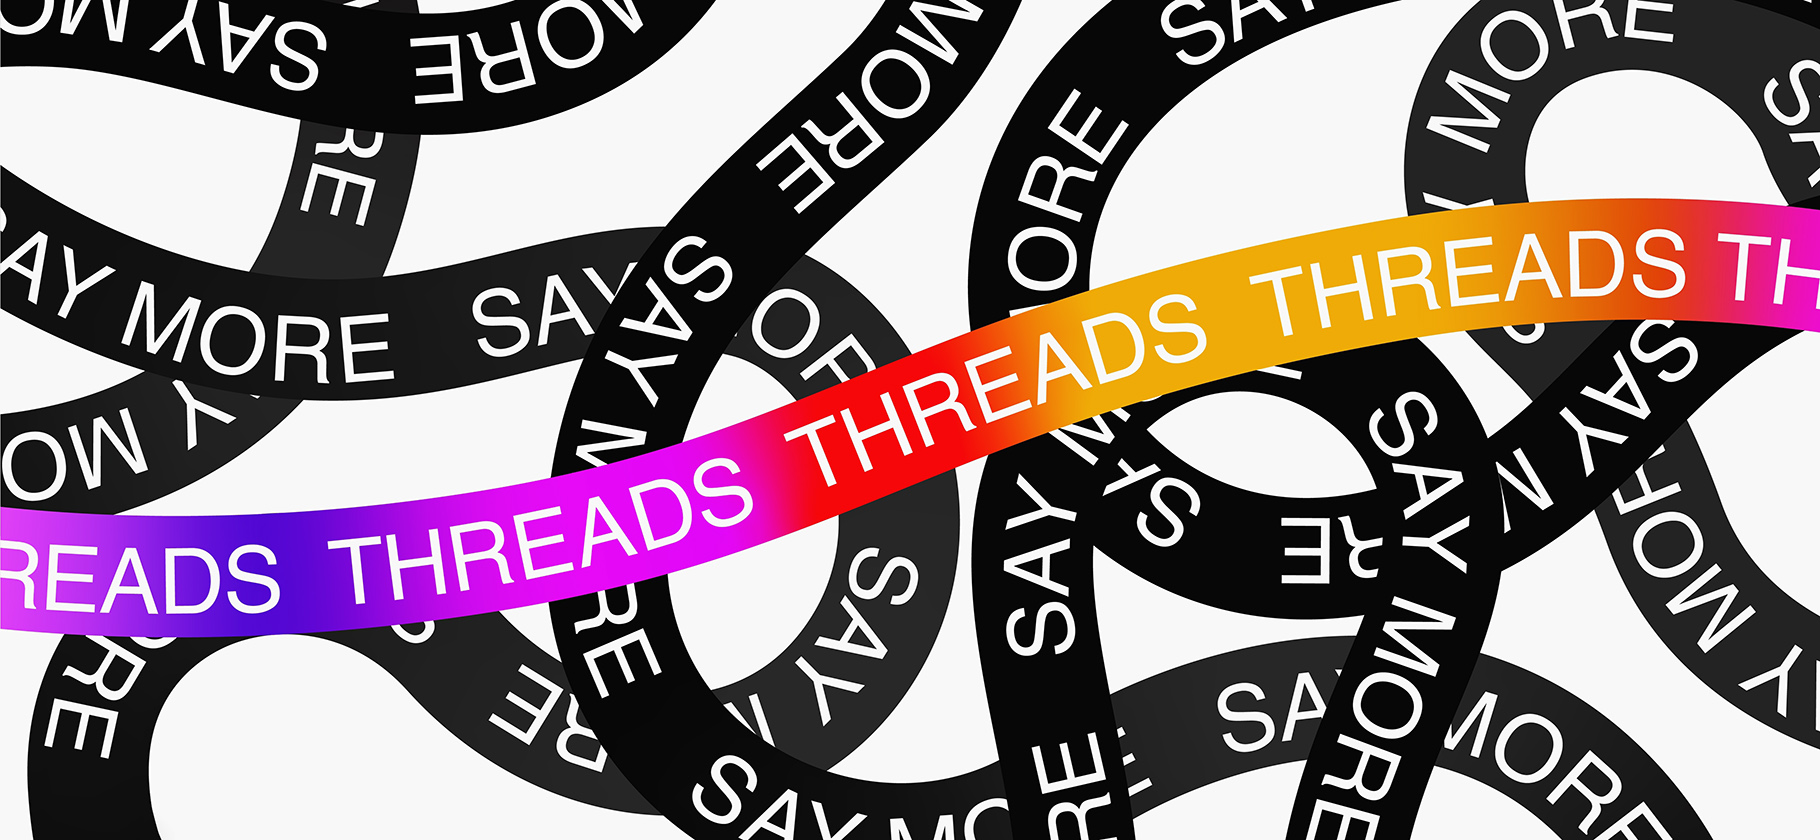 Как пользоваться Threads*: 6 советов для тех, кто только зарегистрировался